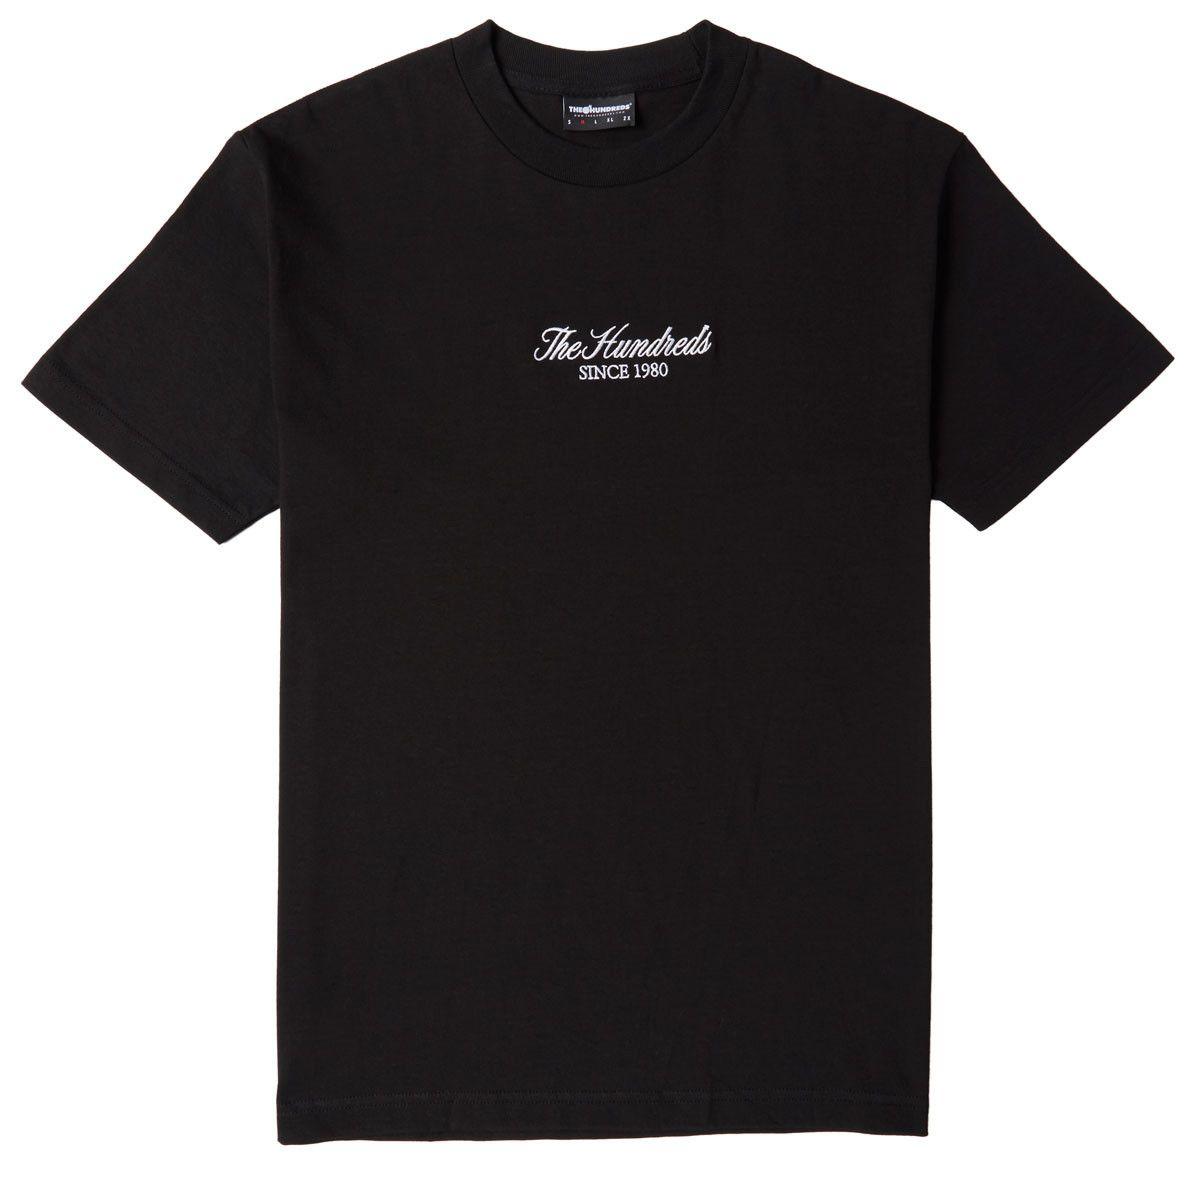 Black and White Hundreds Logo - The Hundreds Rich Logo T-Shirt - Black